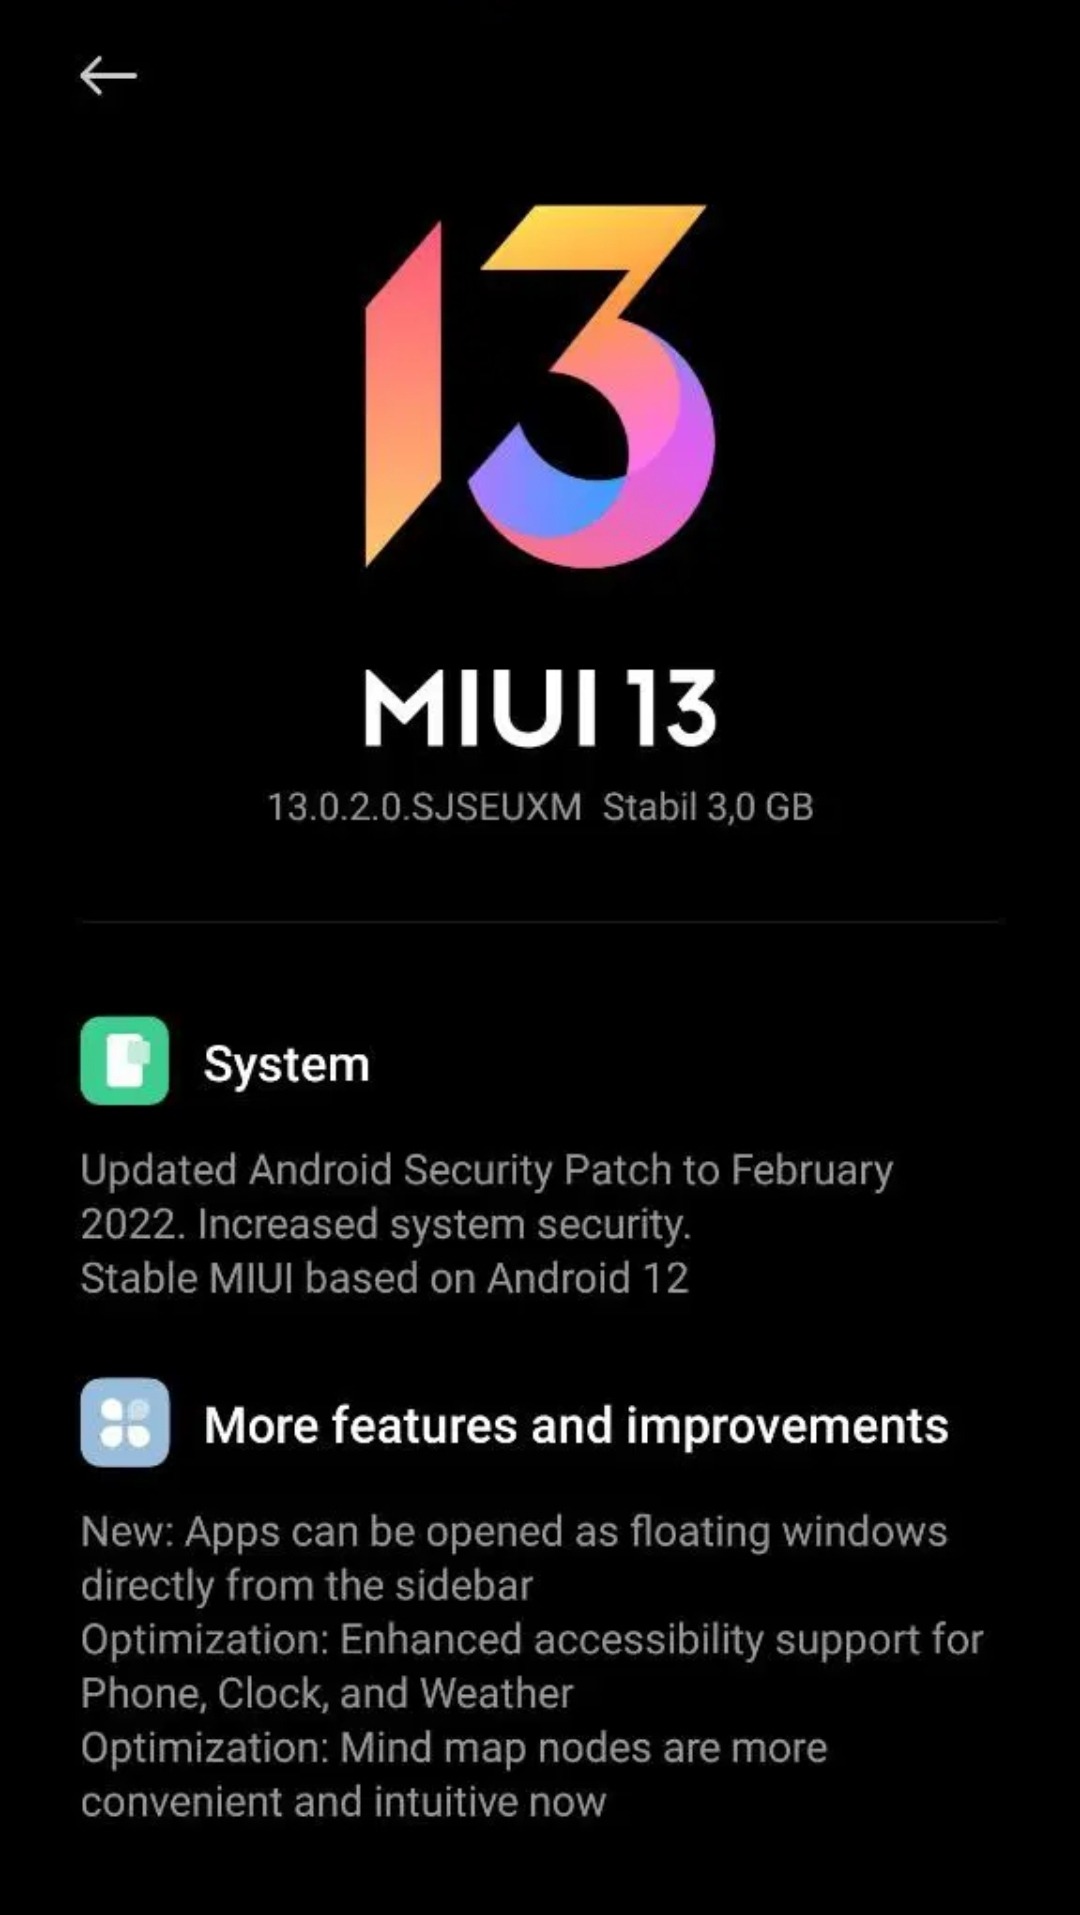 Xiaomi Mi 10T stable MIUI 13 update